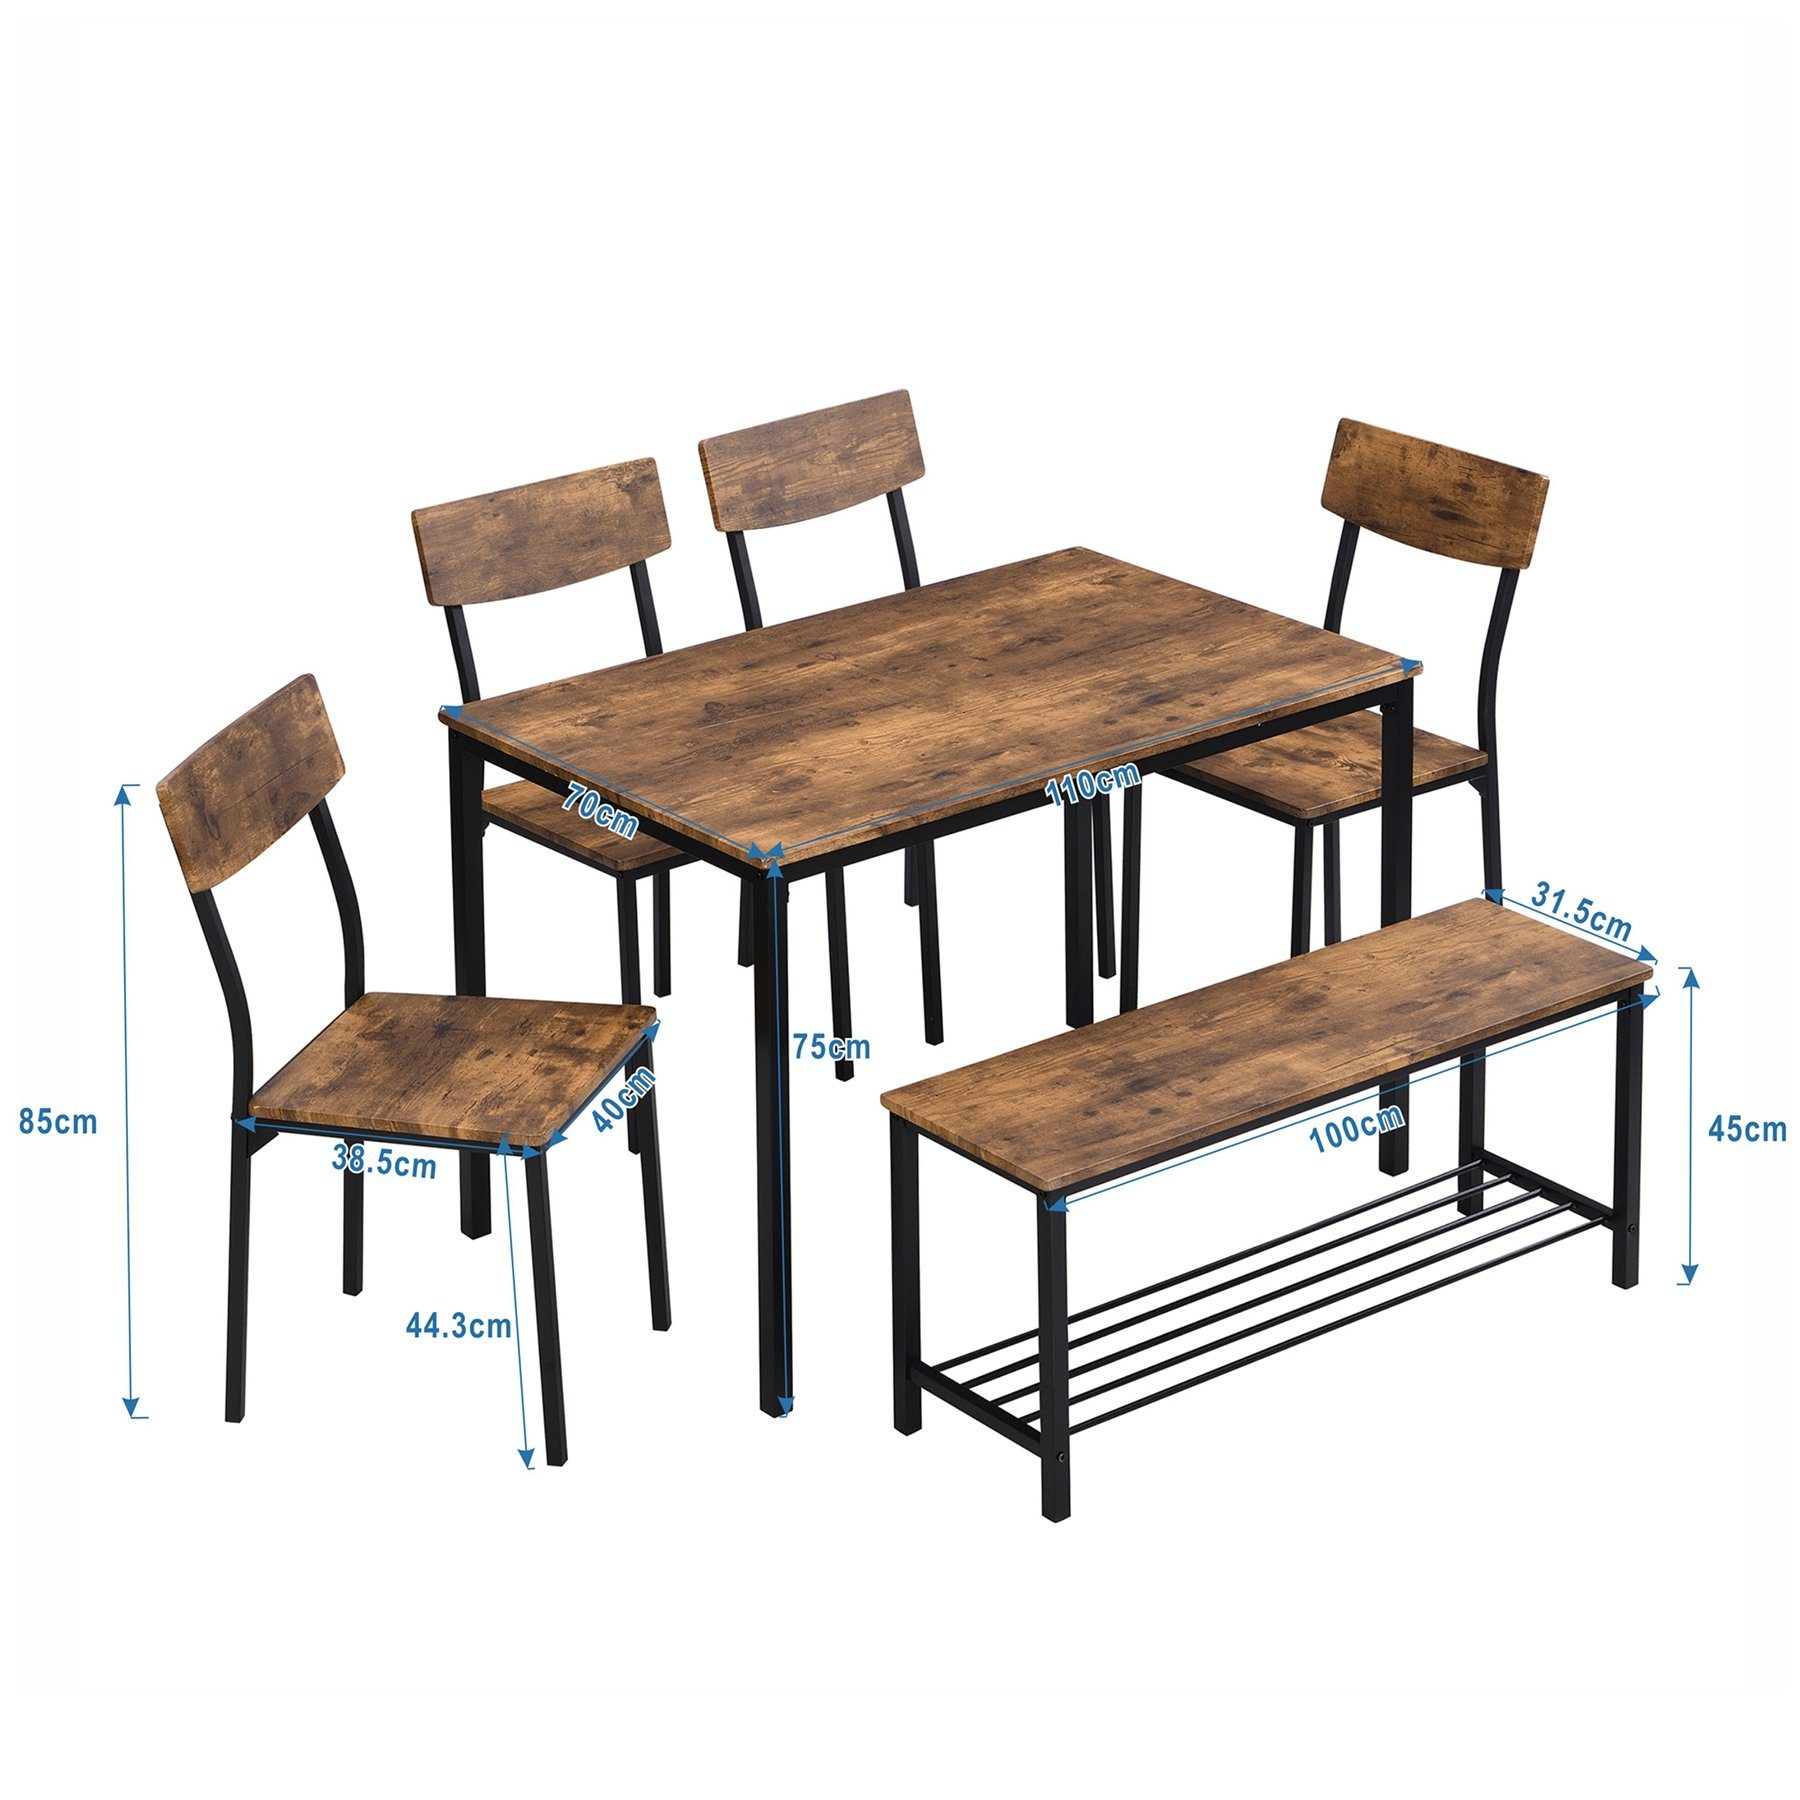 Set 1*Tisch+4*Stühle+1*Schemel, Celya Esszimmerstuhl und 6 Stahlrahmen,Küche Esstisch Stuhl Bank Industrie Holz Esstisch Stil Set,